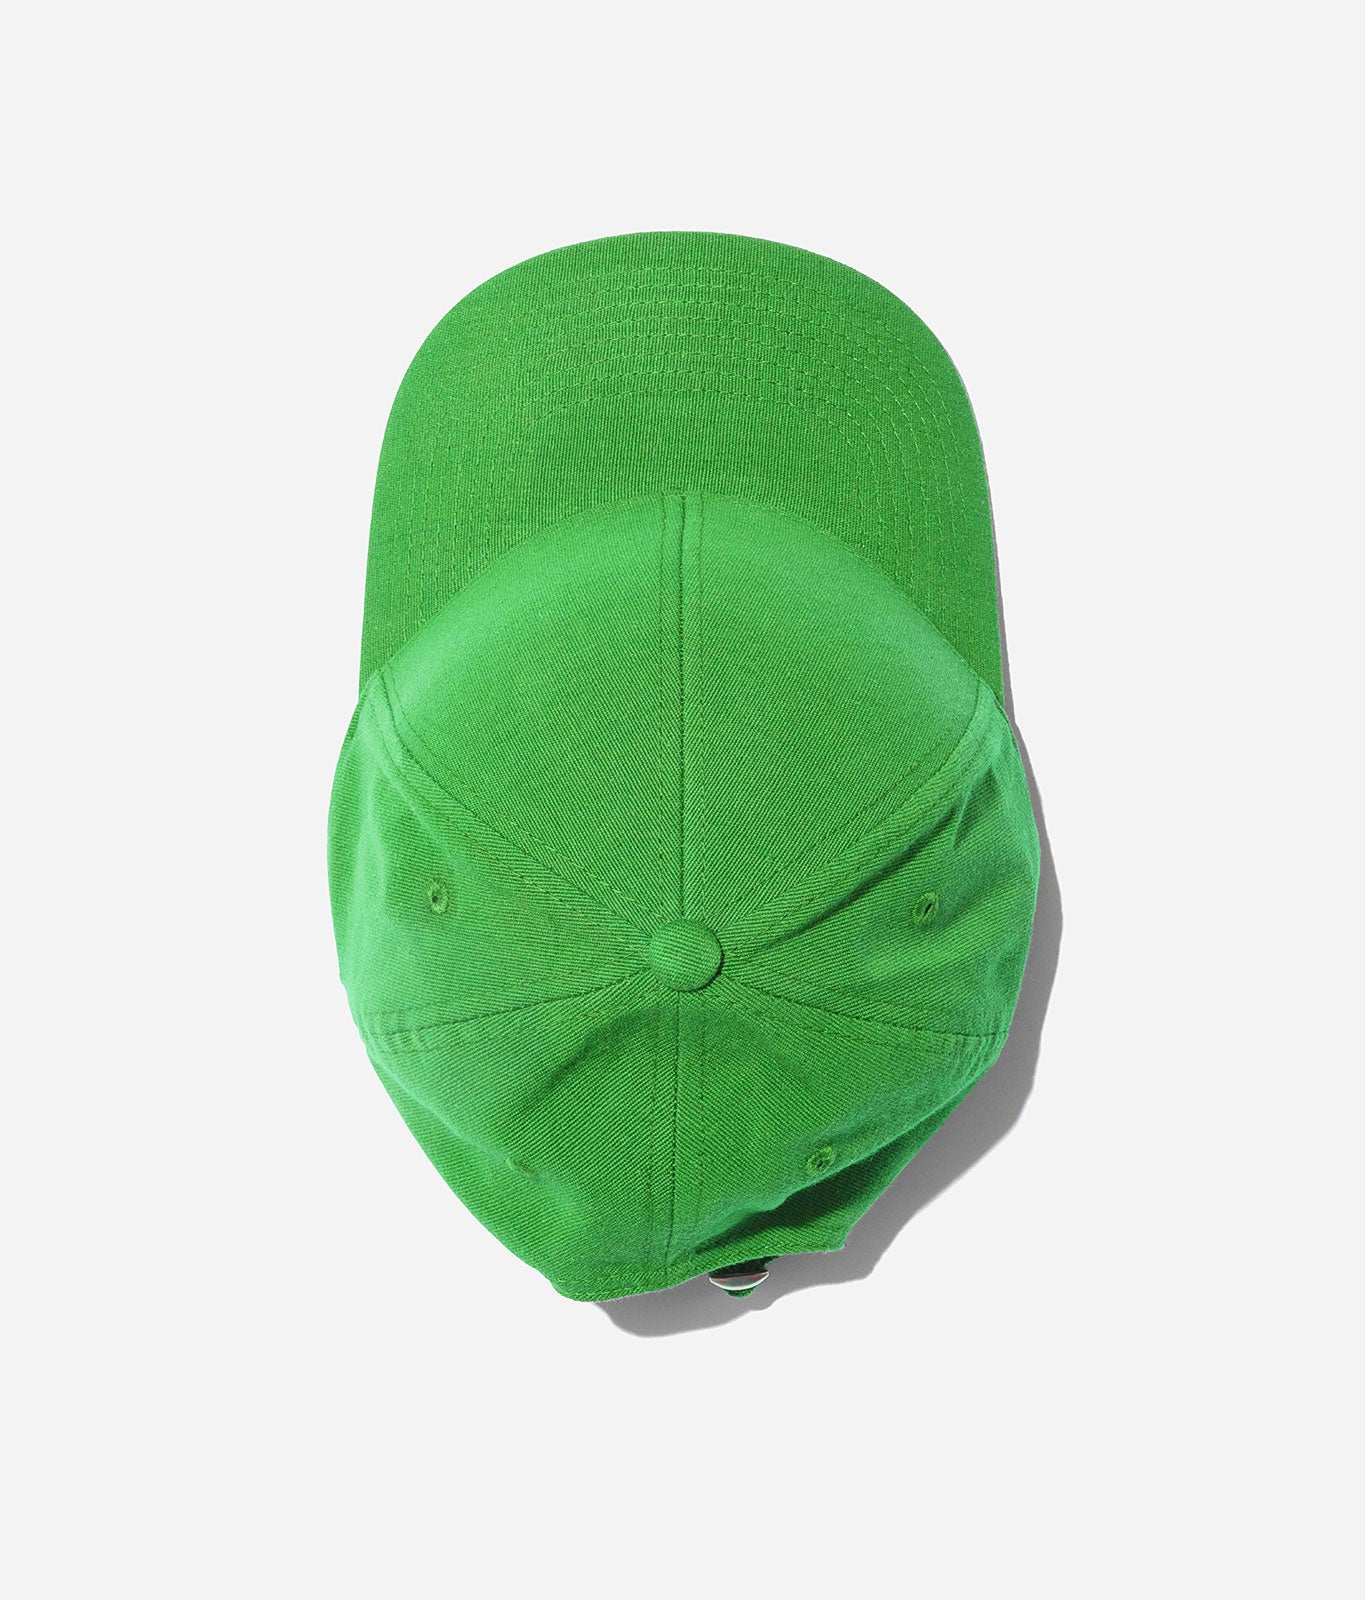 Stiksen │ Green 107 Uniform Baseball Cap Kelly